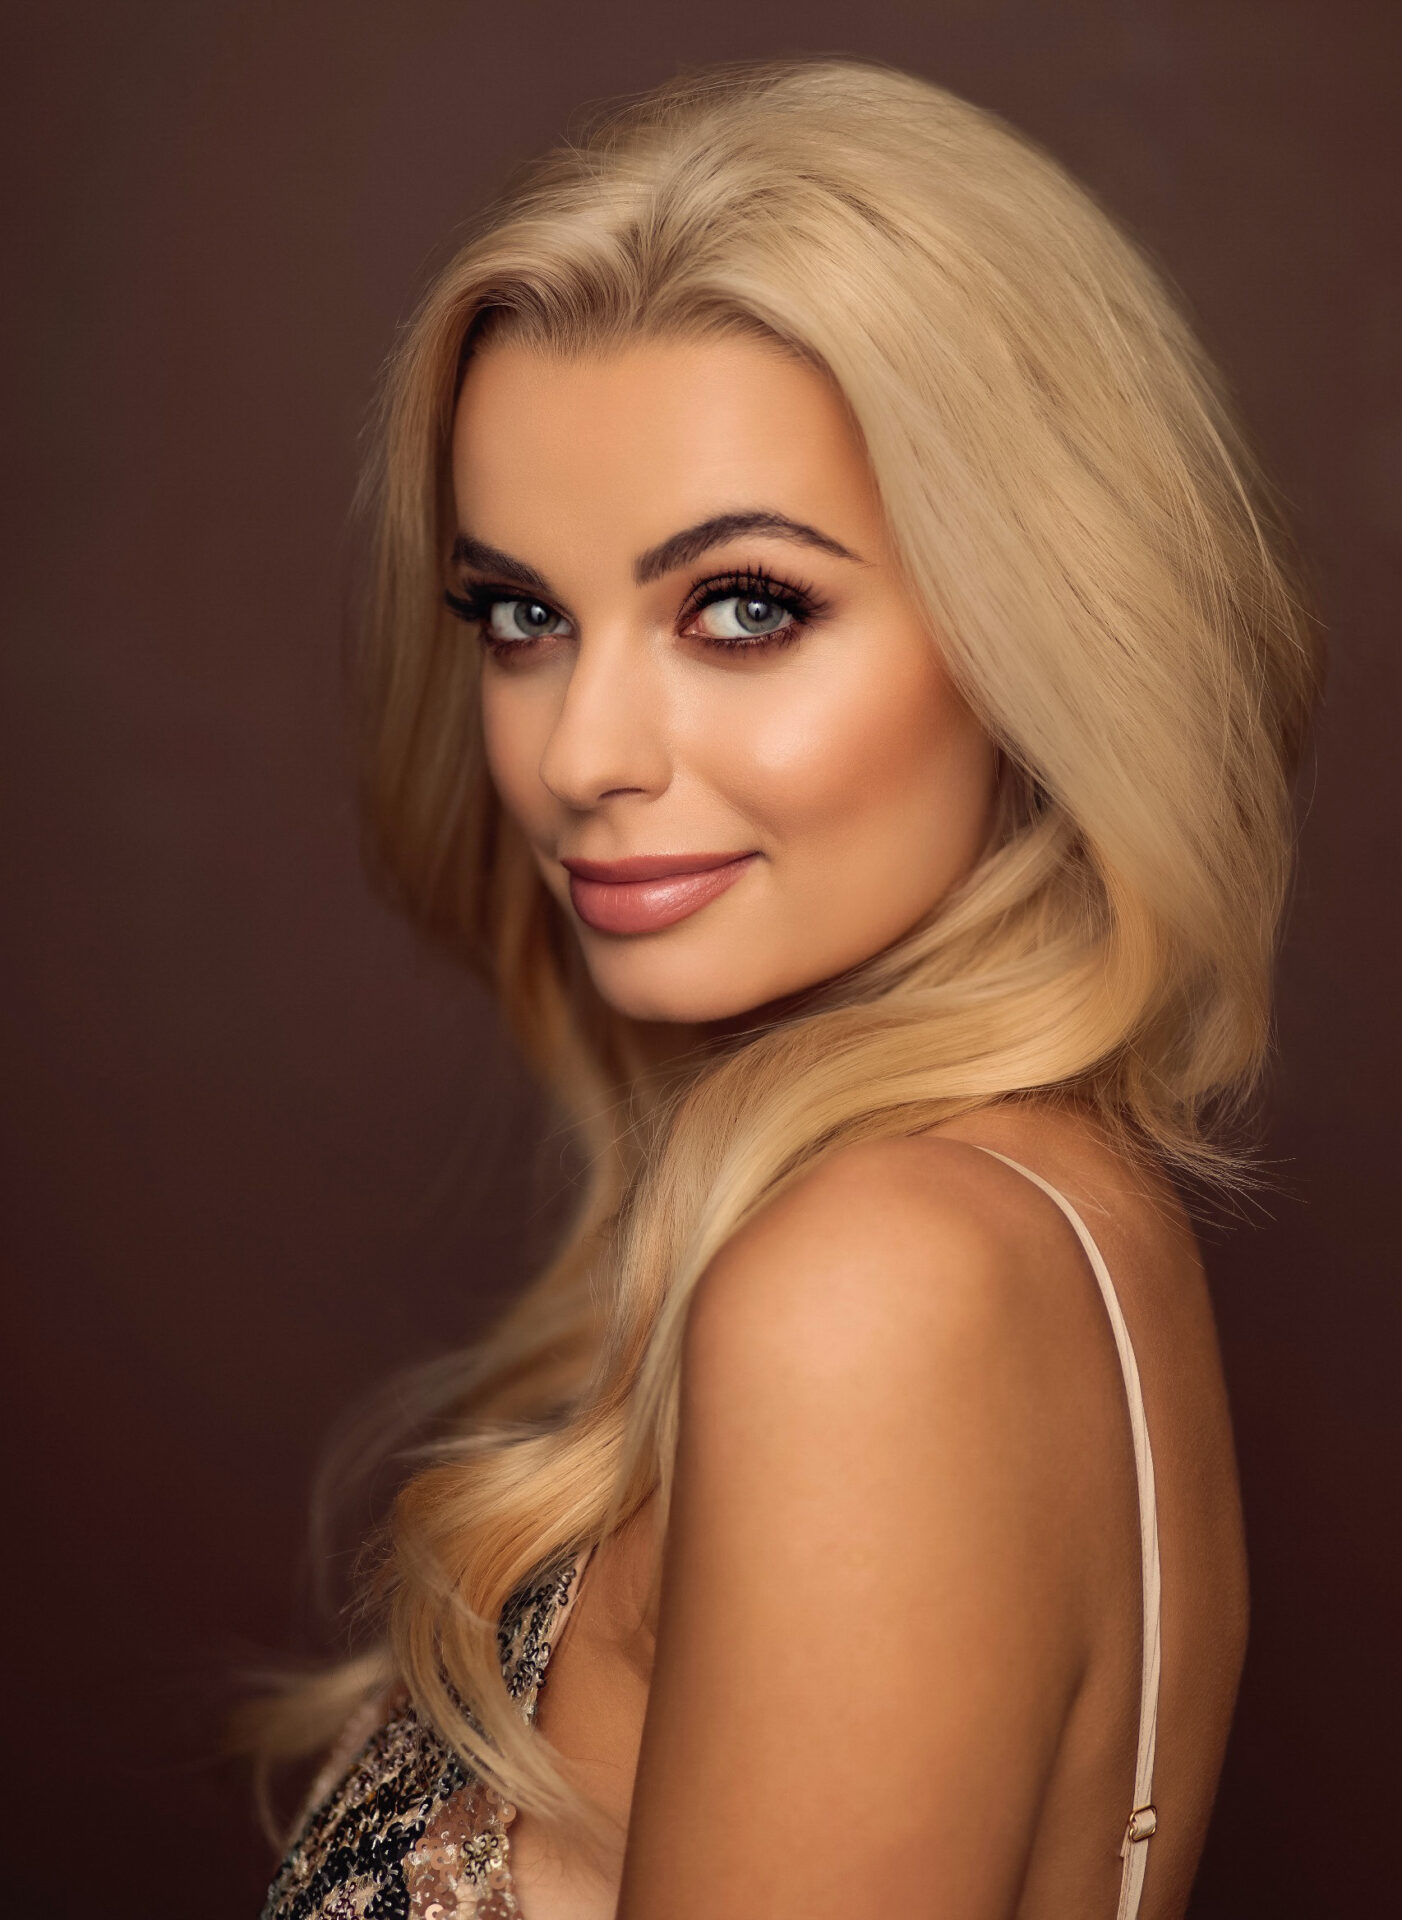 Người đẹp Ba Lan Karolina Bielawska chính thức trở thành Hoa hậu thế giới - Miss World 2021